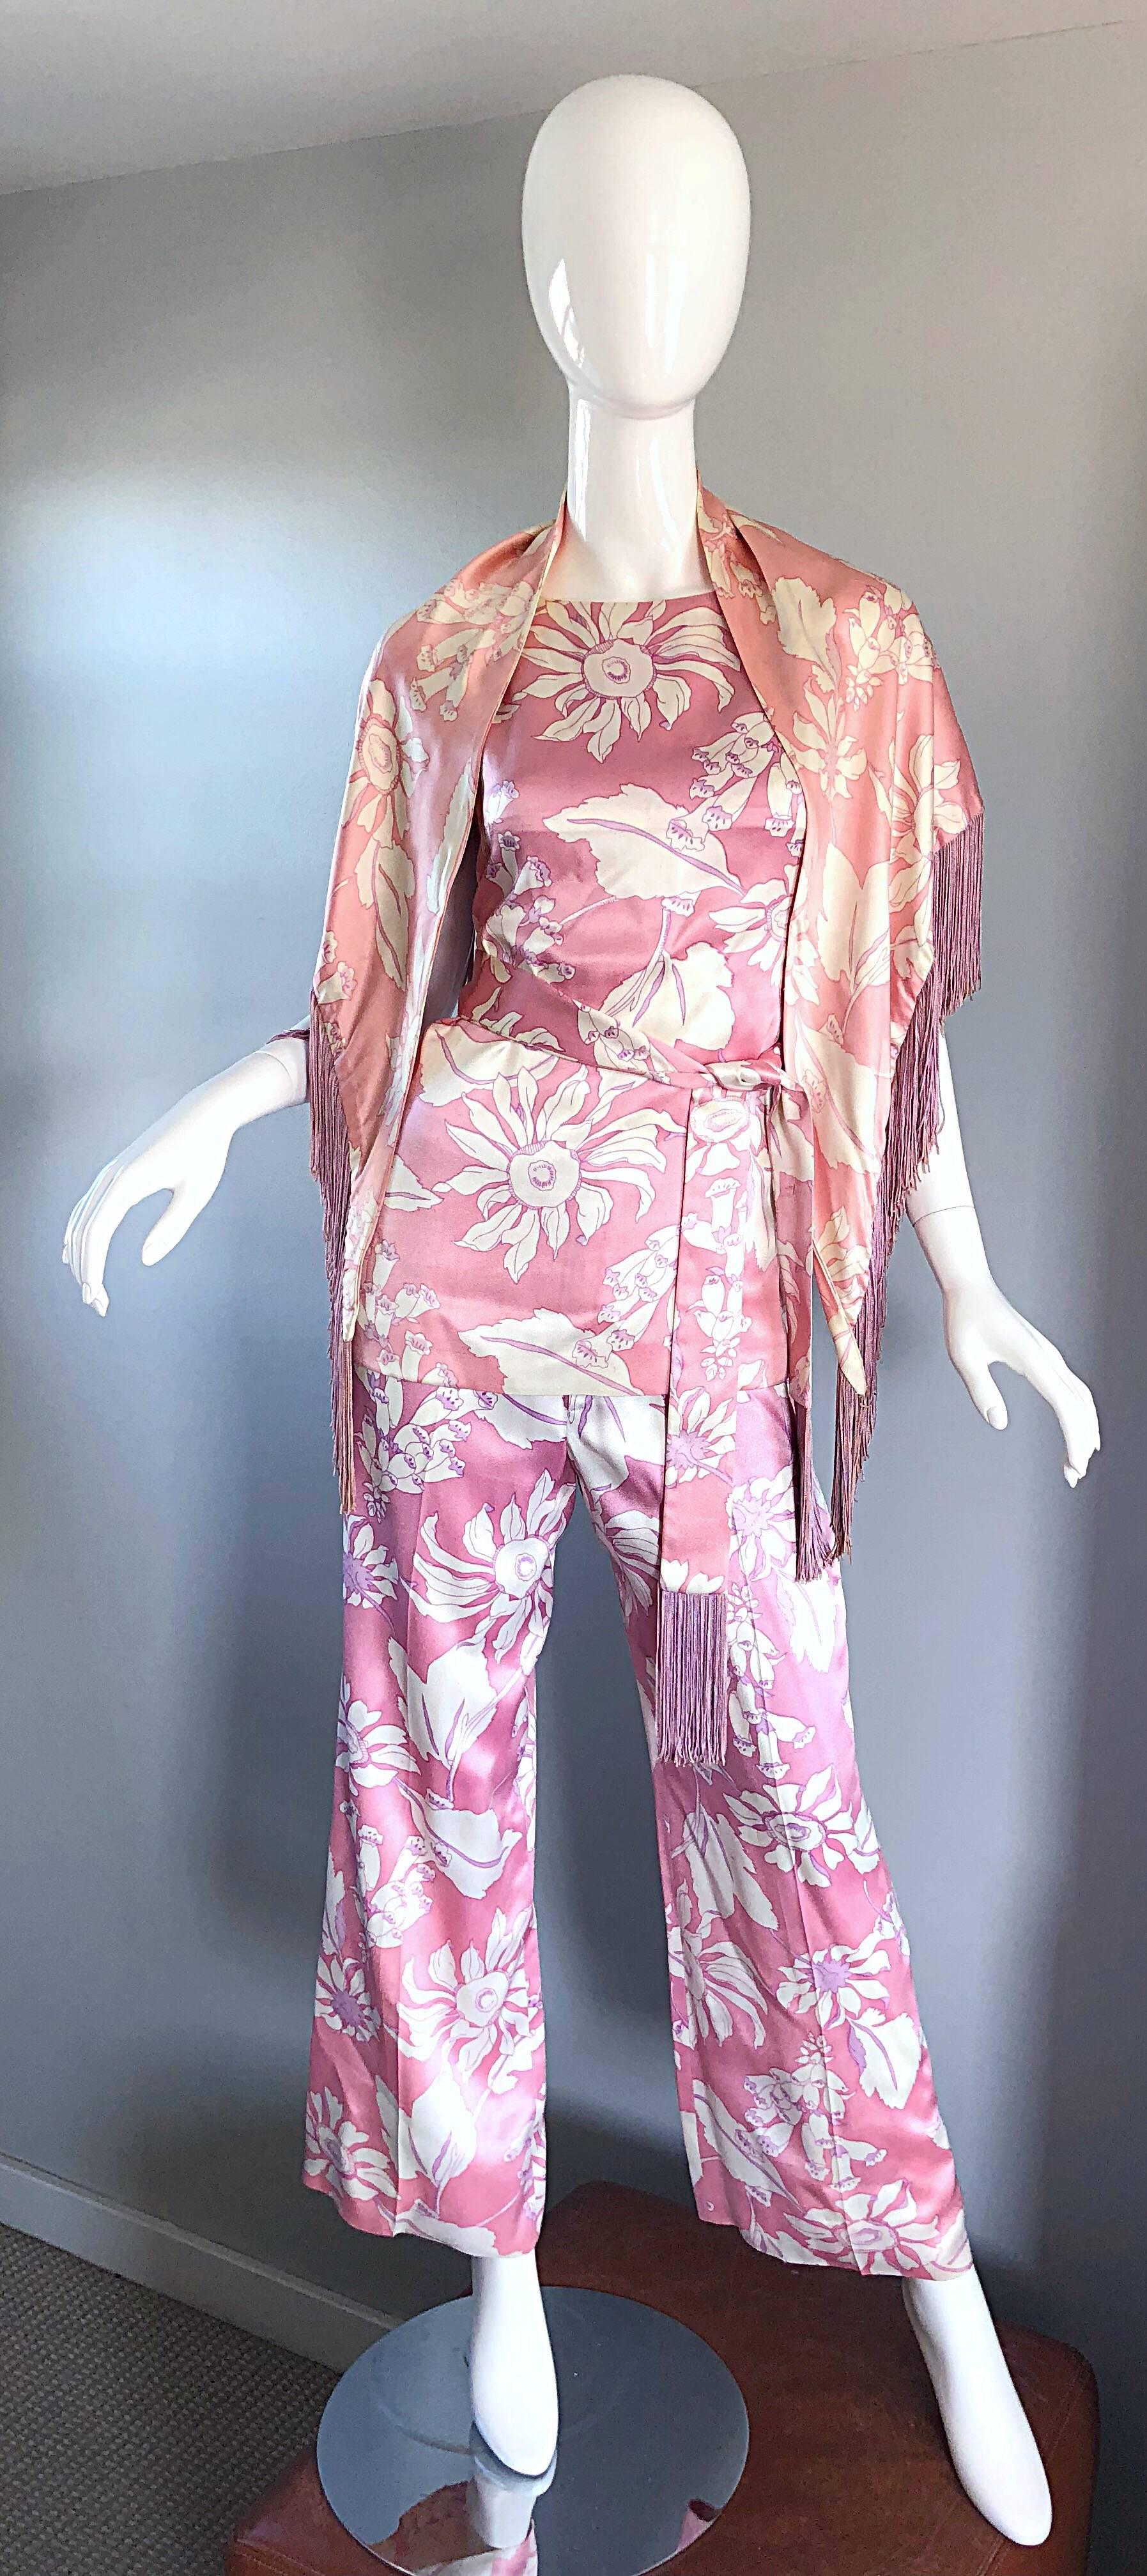 Superbe ensemble quatre pièces GEOFFREY BEENE des années 70, style pyjama en soie ! Chaque pièce est ornée d'un imprimé floral abstrait rose pâle et blanc. Le châle est volontairement assorti de rose pâle et d'ivoire pour mettre en valeur